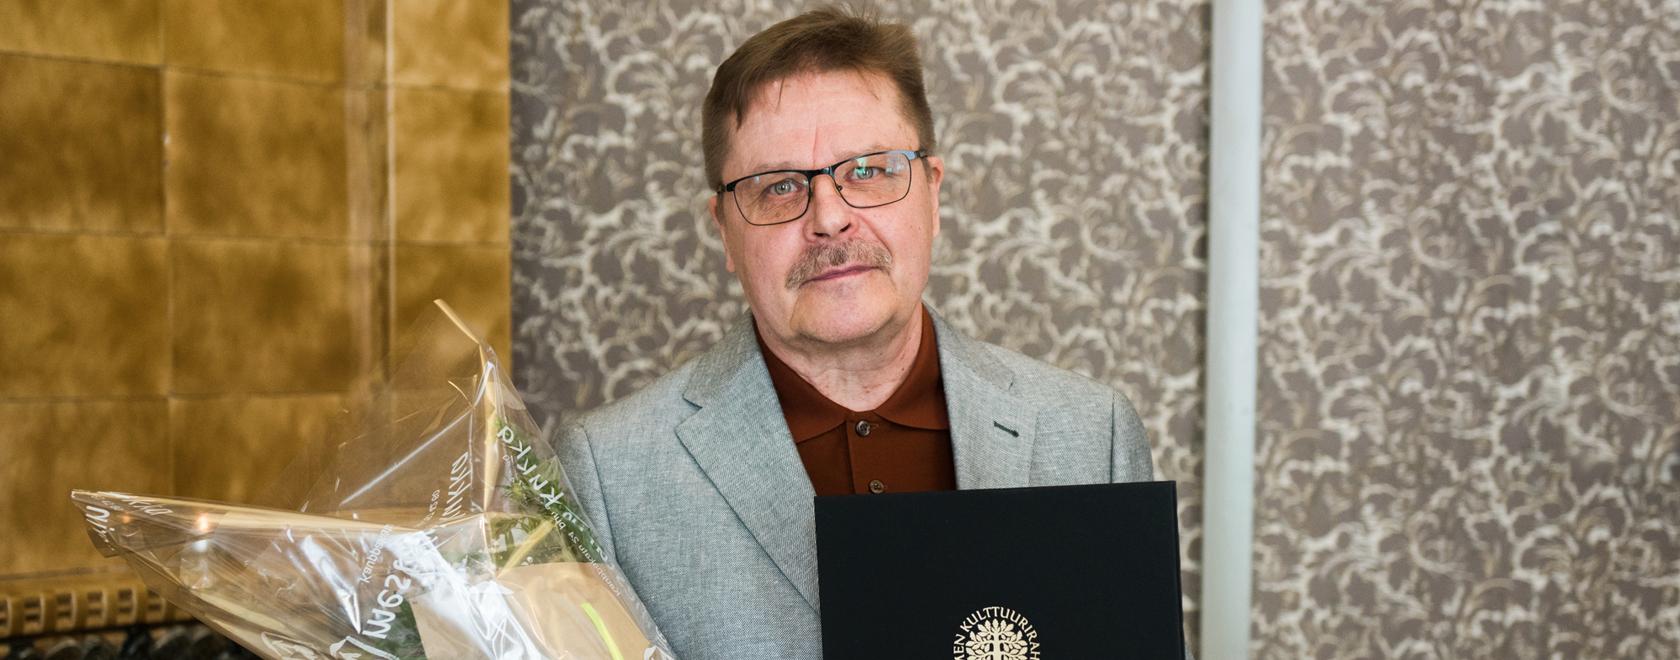 Kuvataiteilija Pertti Karjalainen sai Keski-Suomen rahaston kulttuuripalkinnon vuonna 2021. Kuva: Jaakko Manninen